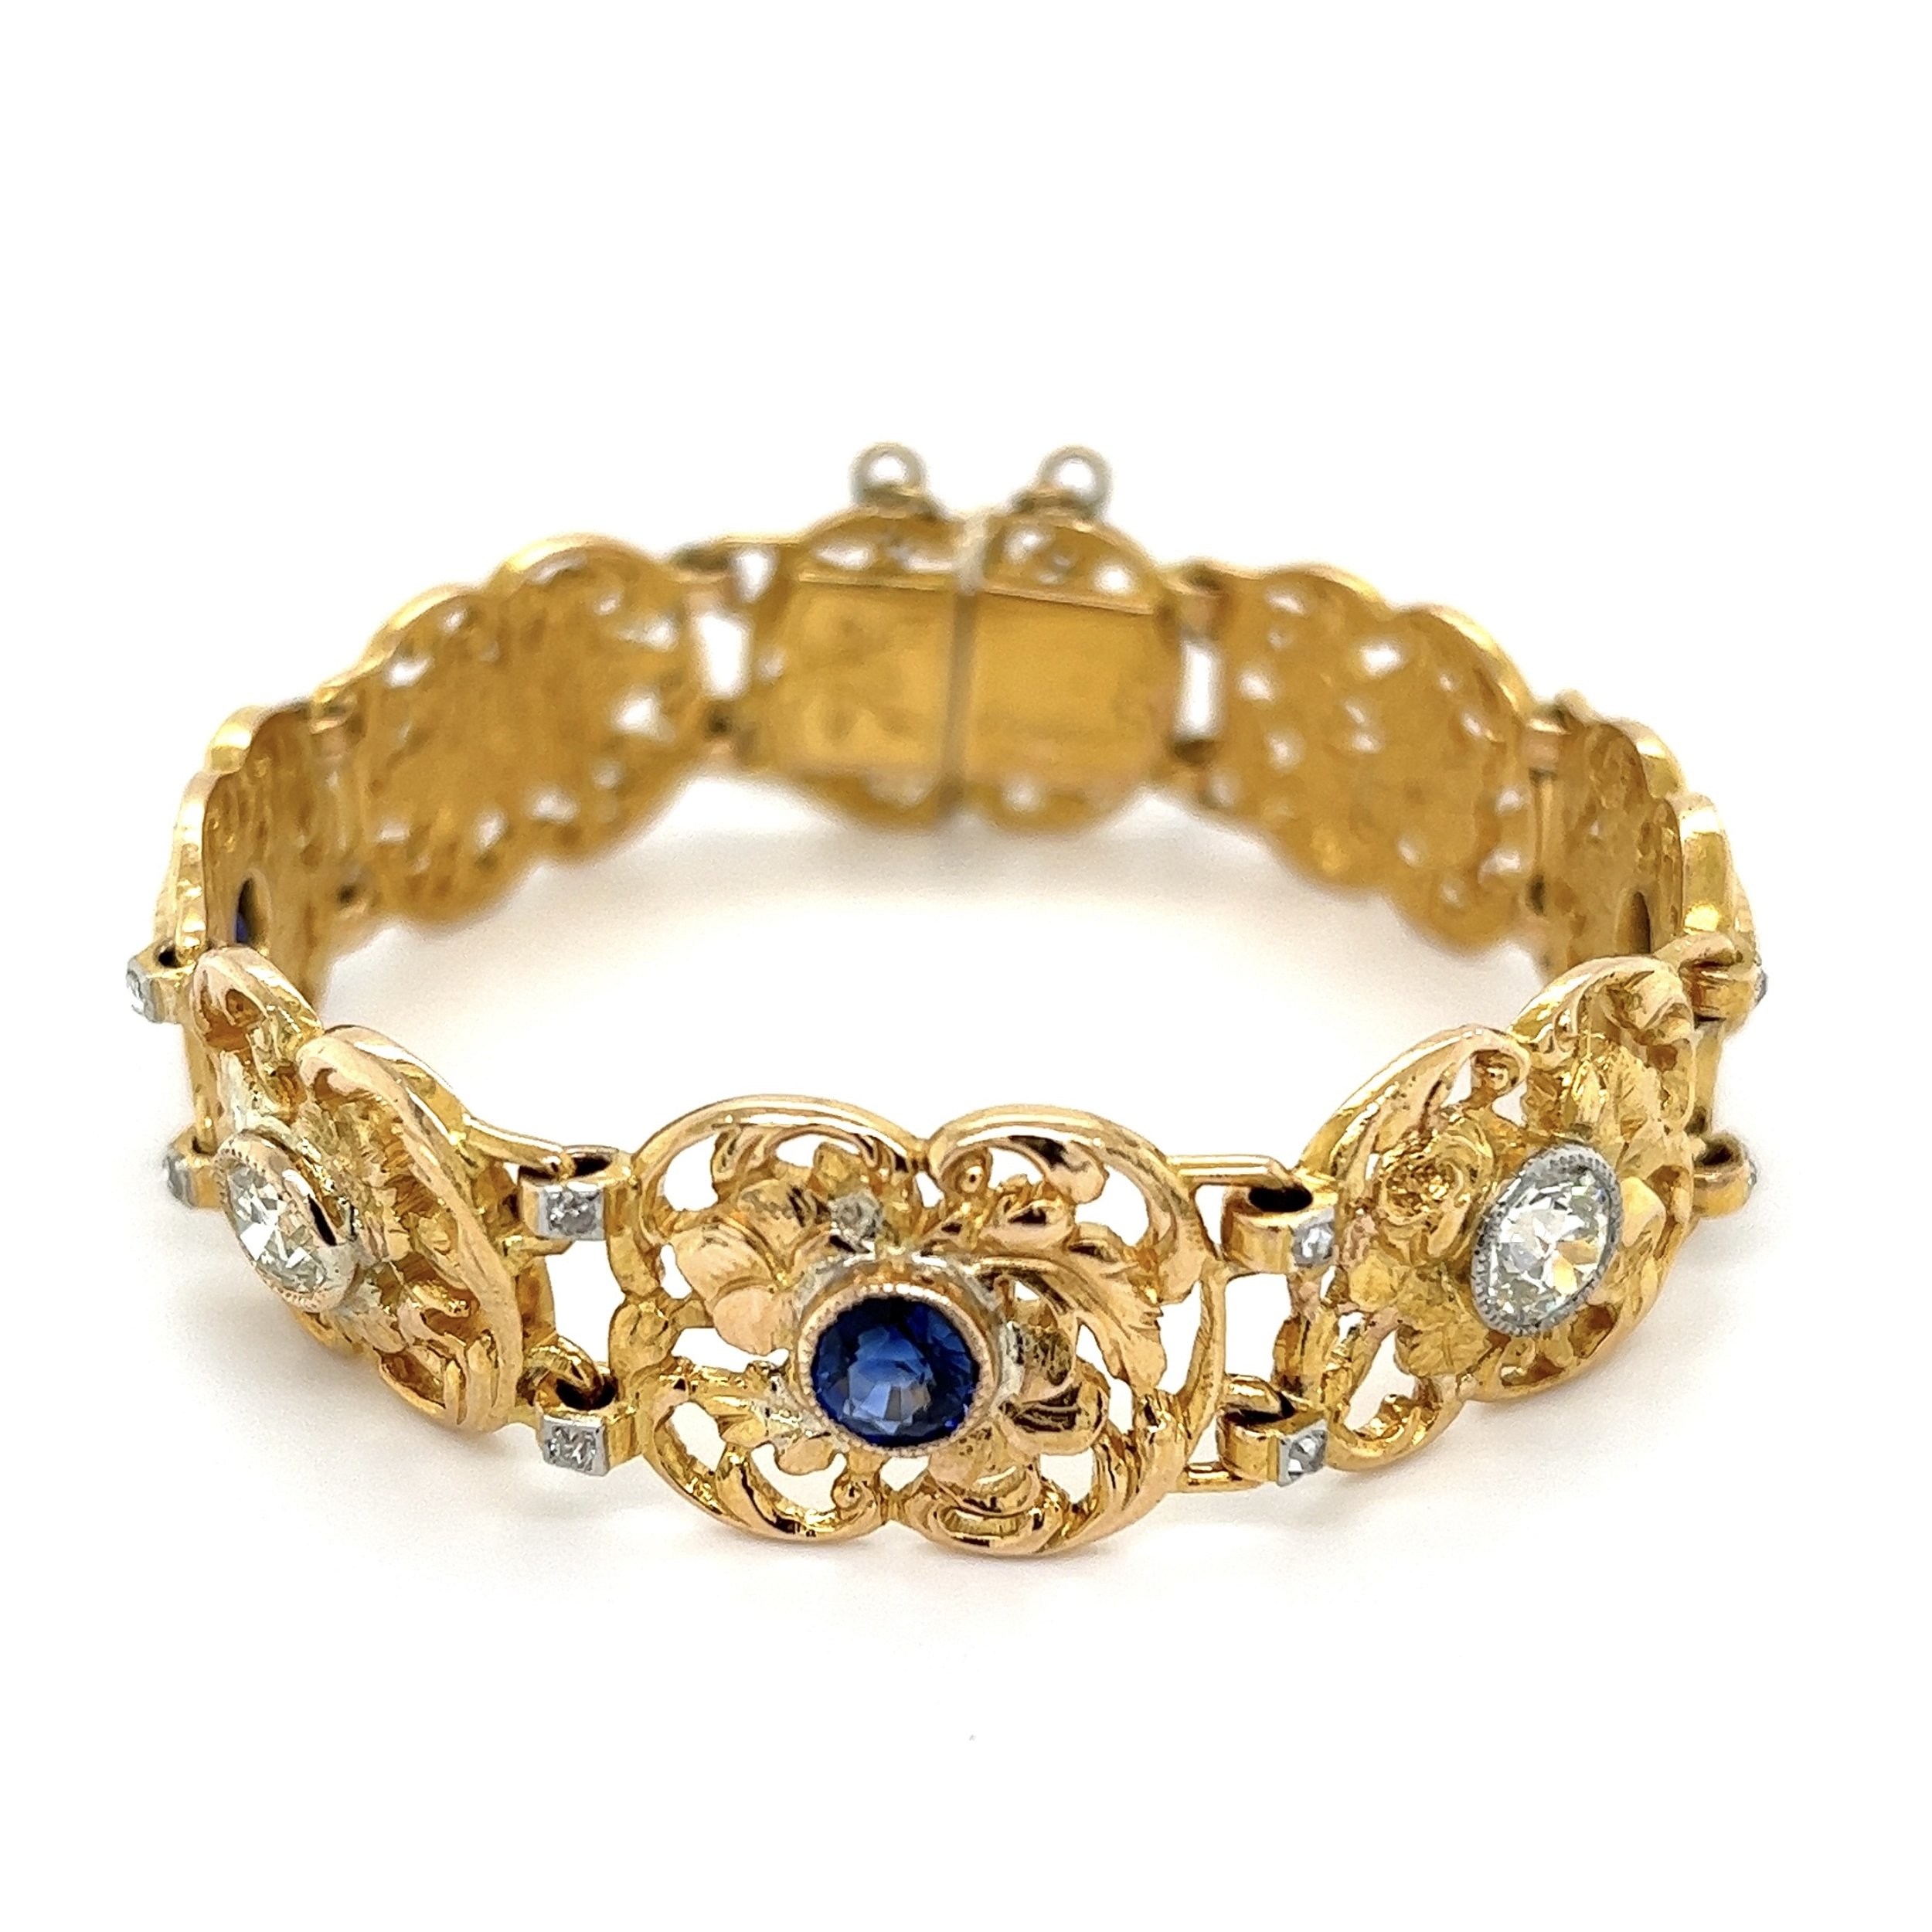 18K YG Edwardian 2.56tcw Sapphire & 1.45tcw OEC Diamond Bracelet 41.3g, 6.75"